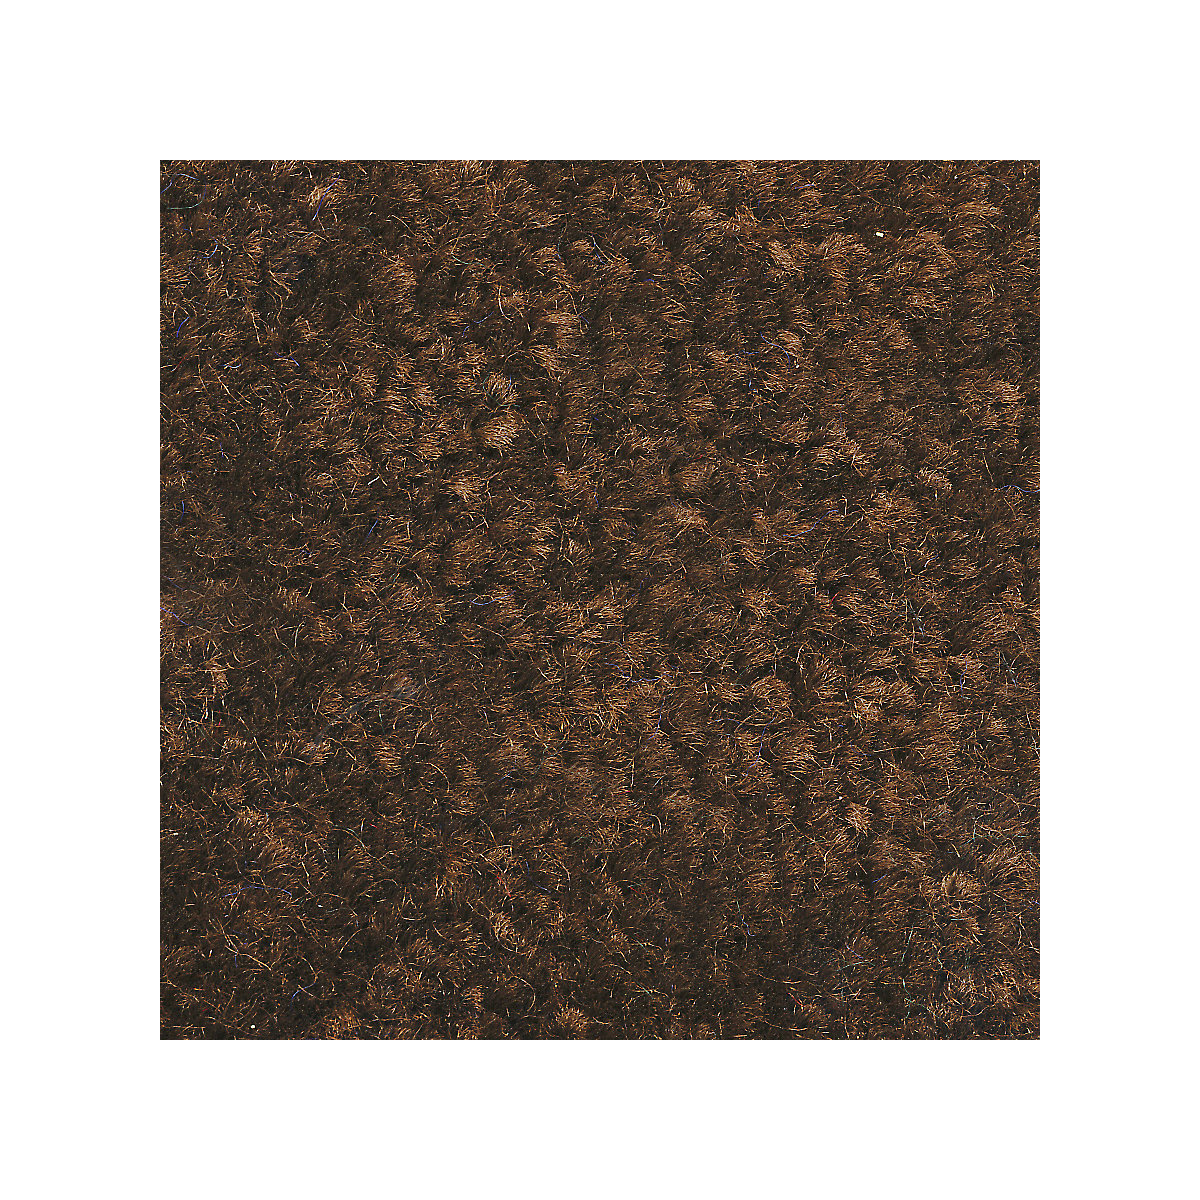 Mata wychwytująca brud do stosowania wewnątrz, runo z polipropylenu, dł. x szer. 900 x 600 mm, opak. 2 szt., brązowy